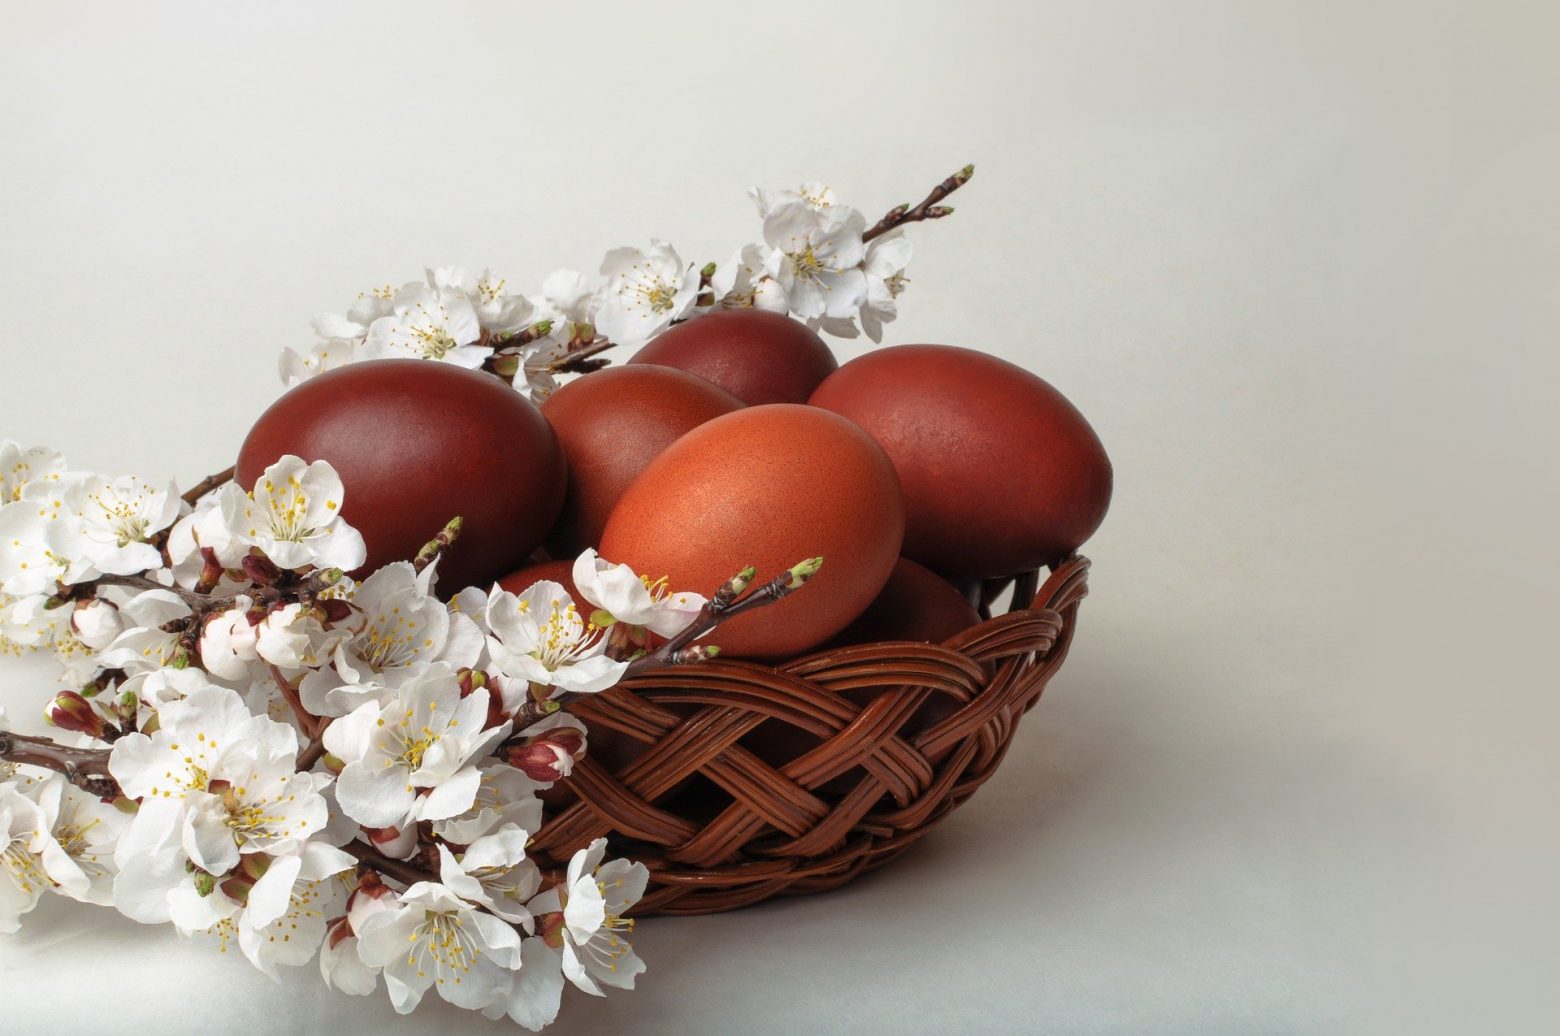 Πώς να βάψετε τα πασχαλινά αυγά - Τα μυστικά που πρέπει να γνωρίζετε